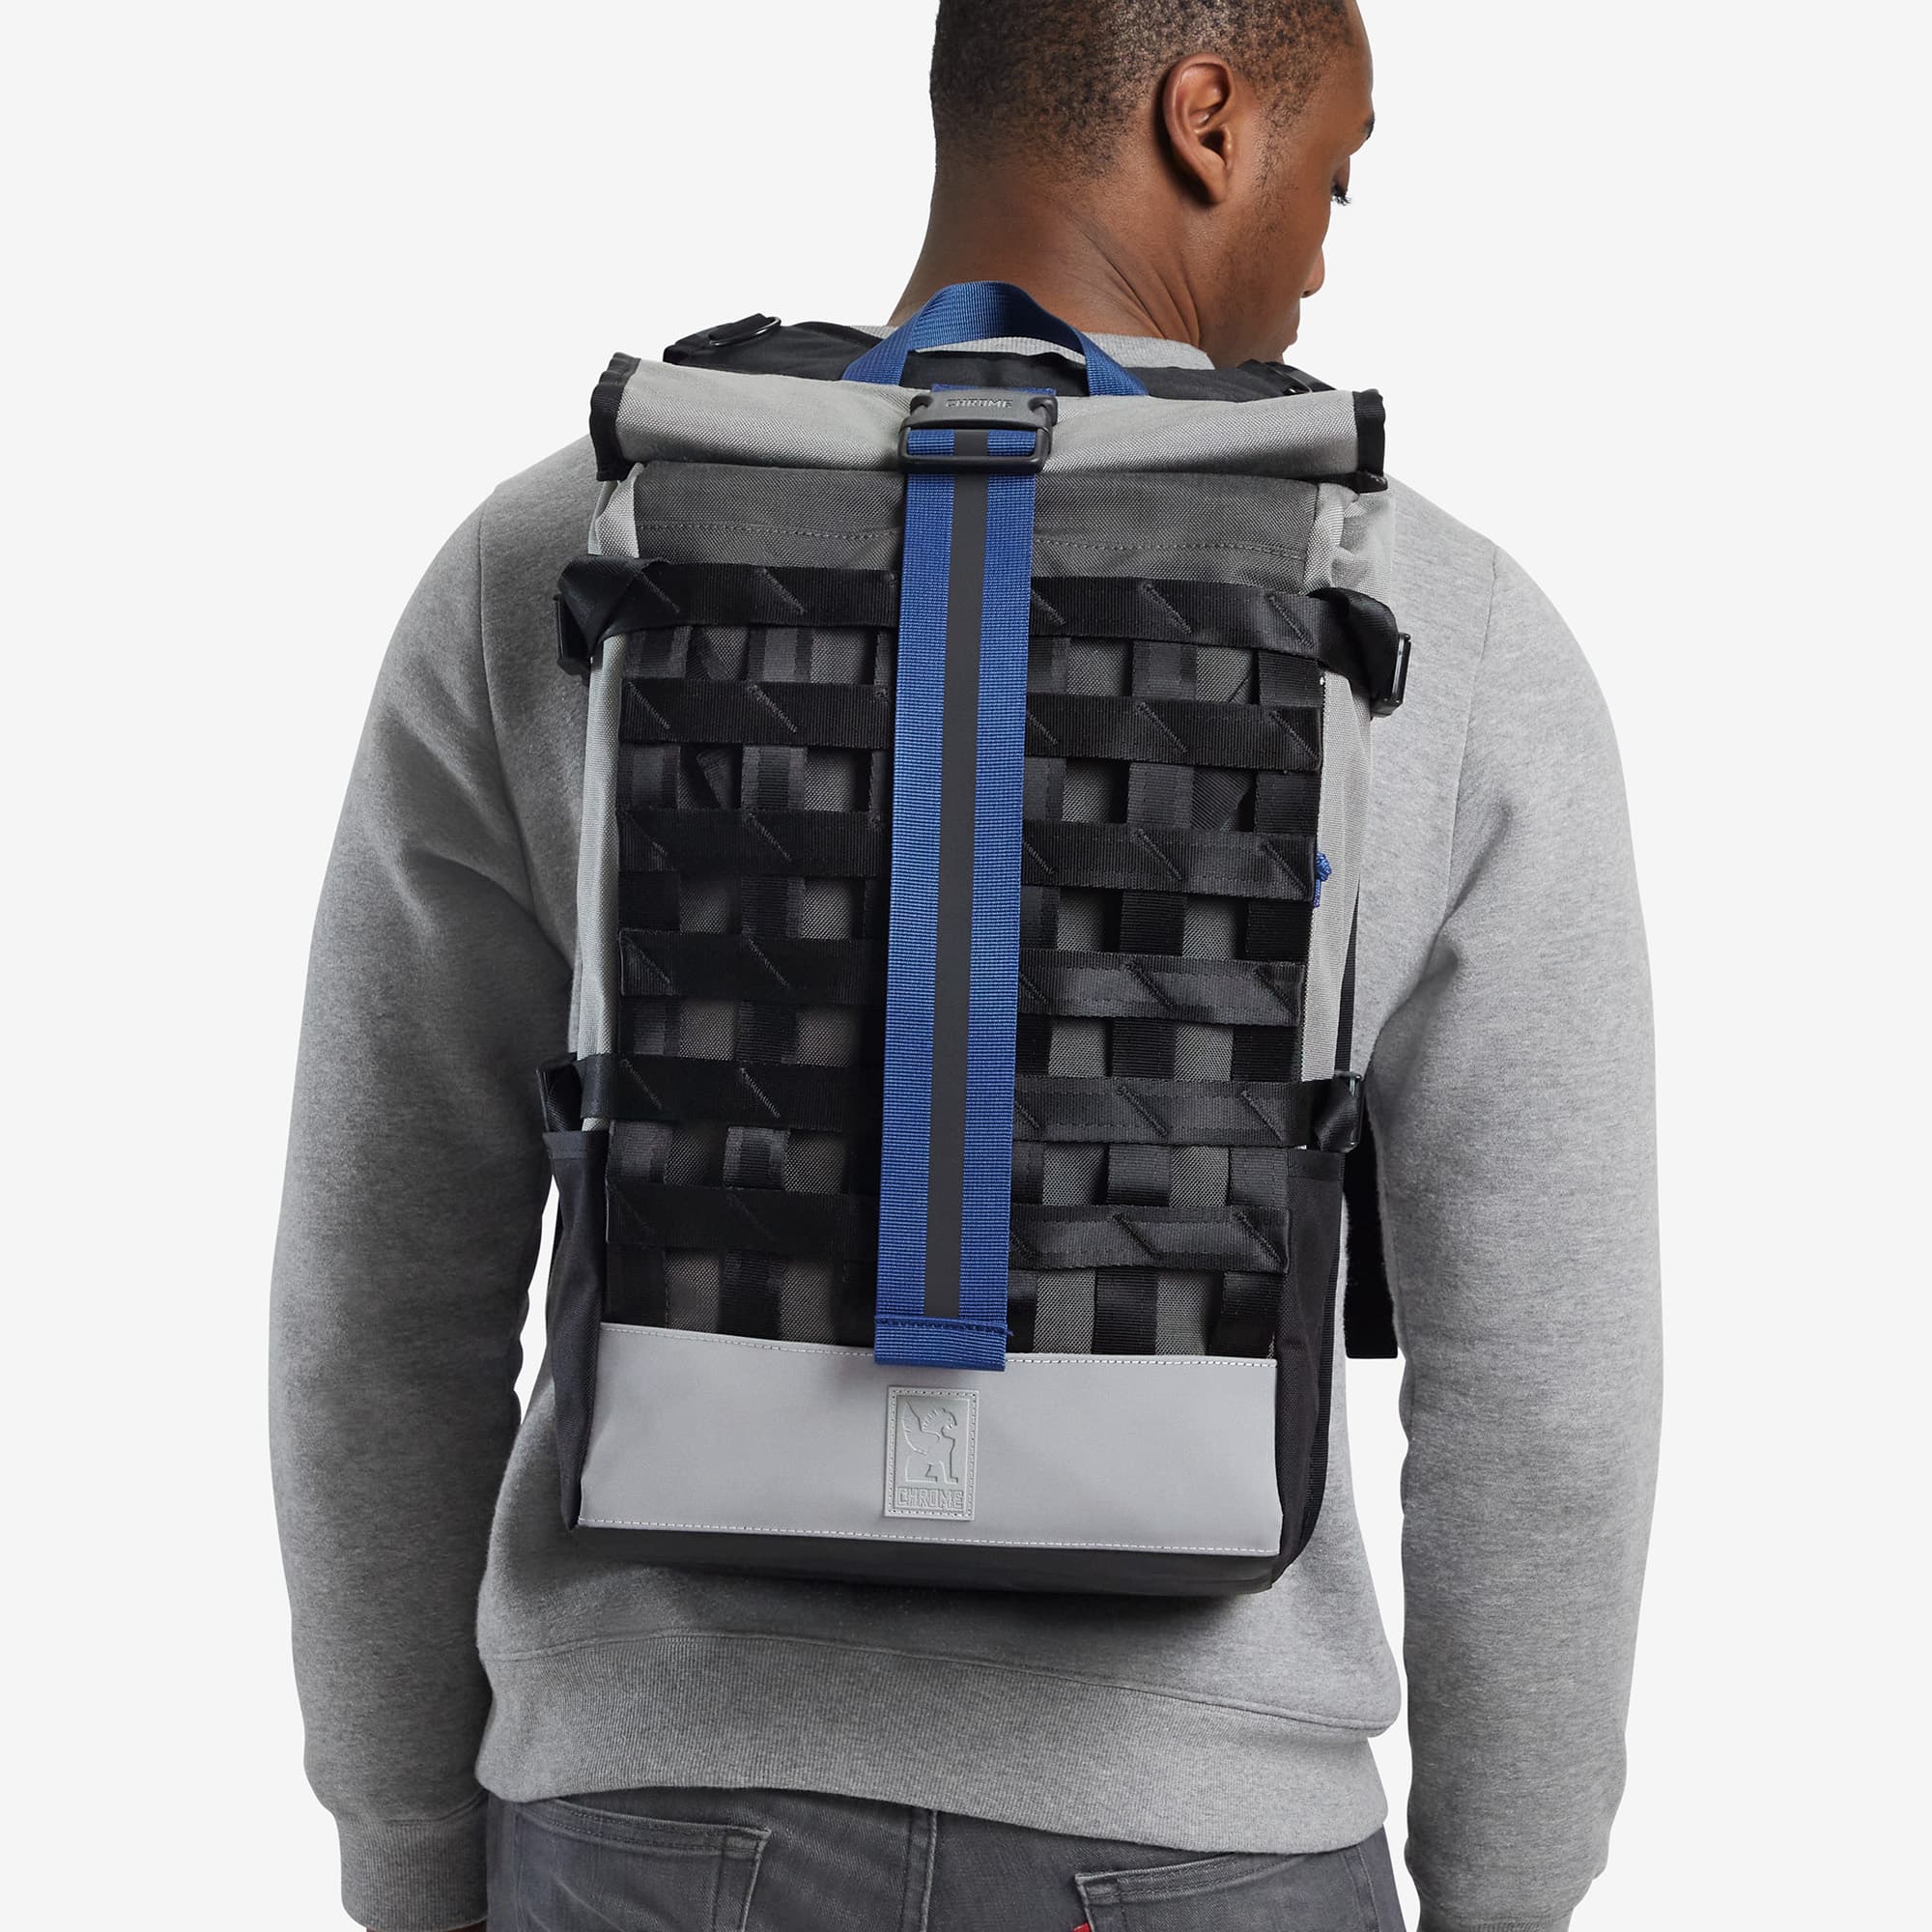 Grey reflective Barrage Cargo Backpack on a mans back #color_fog